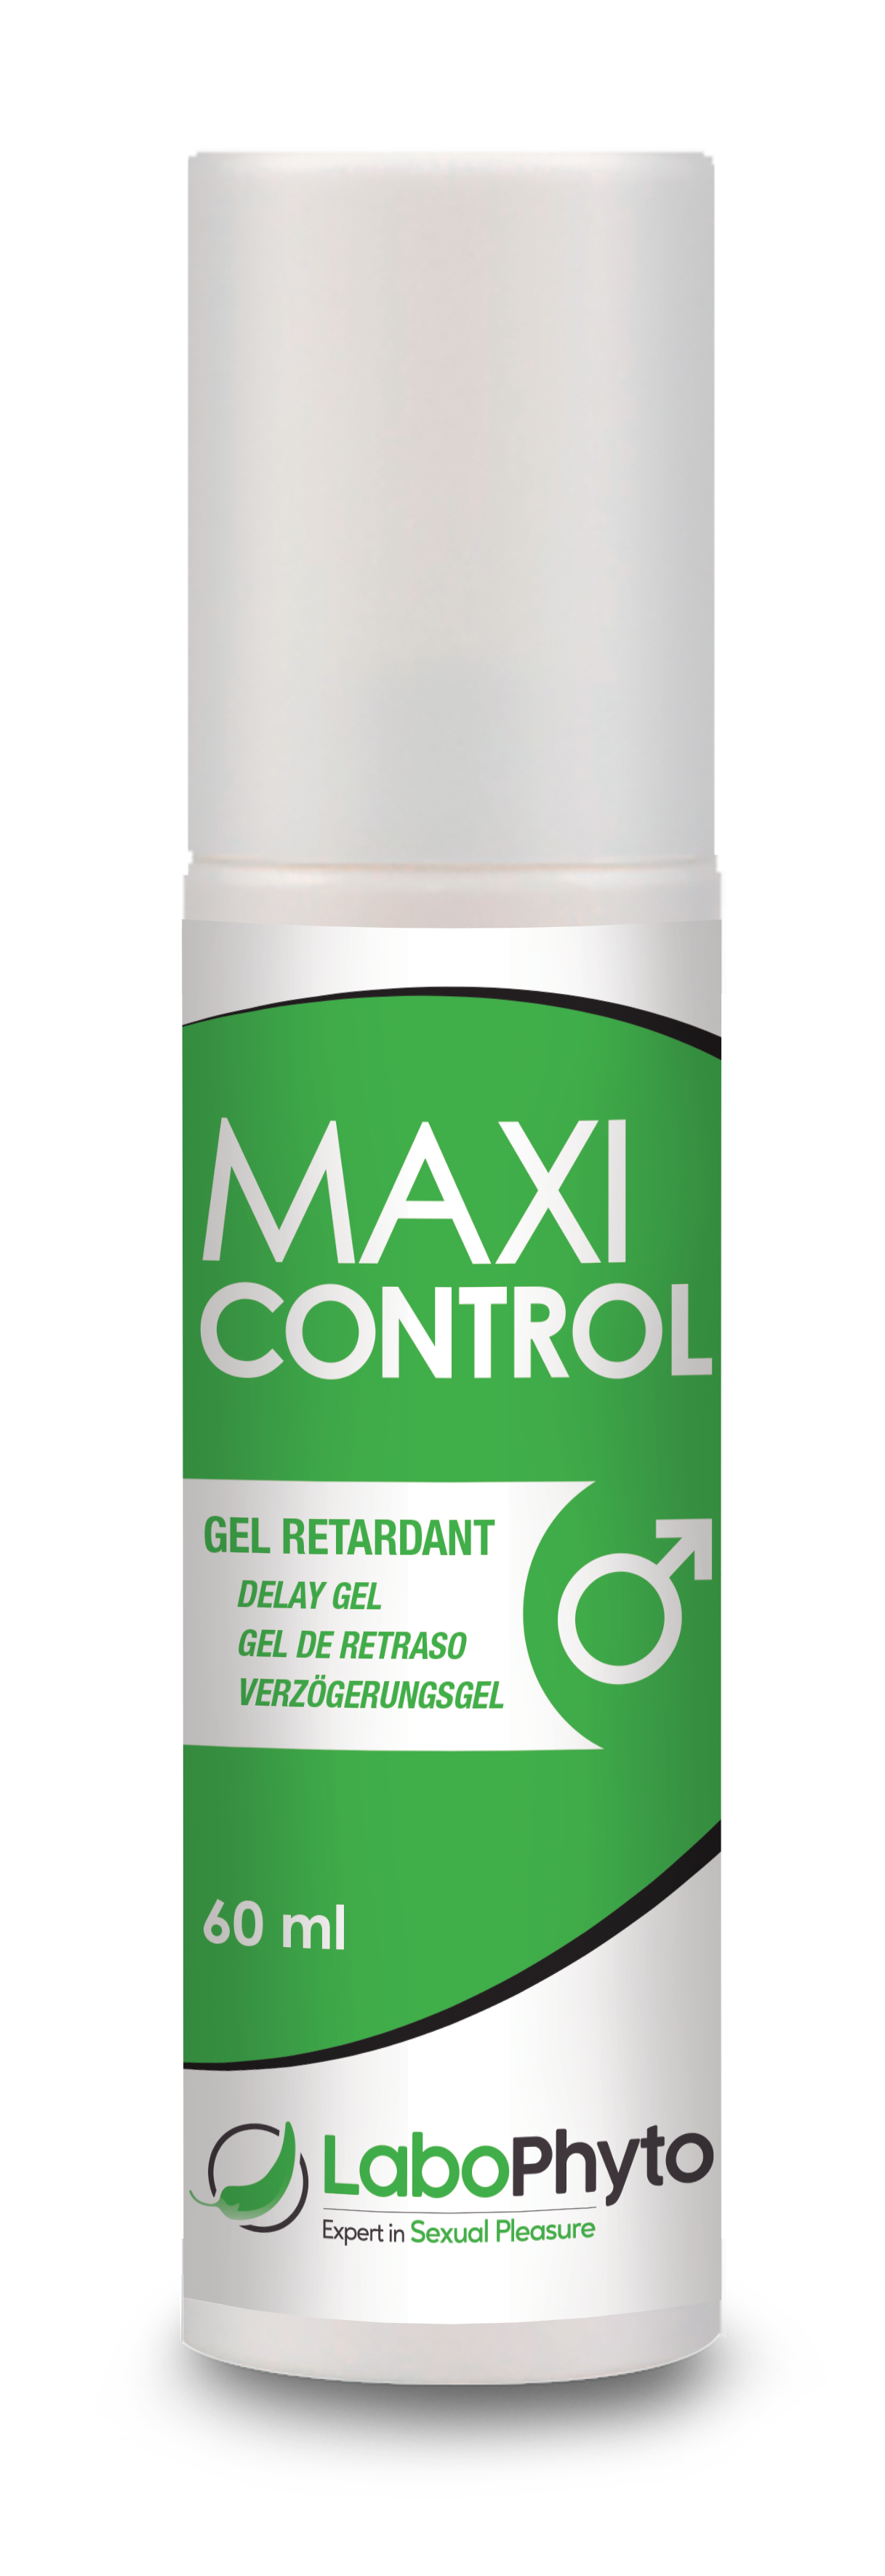 Control gel. Макси гель. Maxi Gel 360 300 ml. Jo гель-пролонгатор умеренного действия для мужчин prolonger Gel 60 мл.